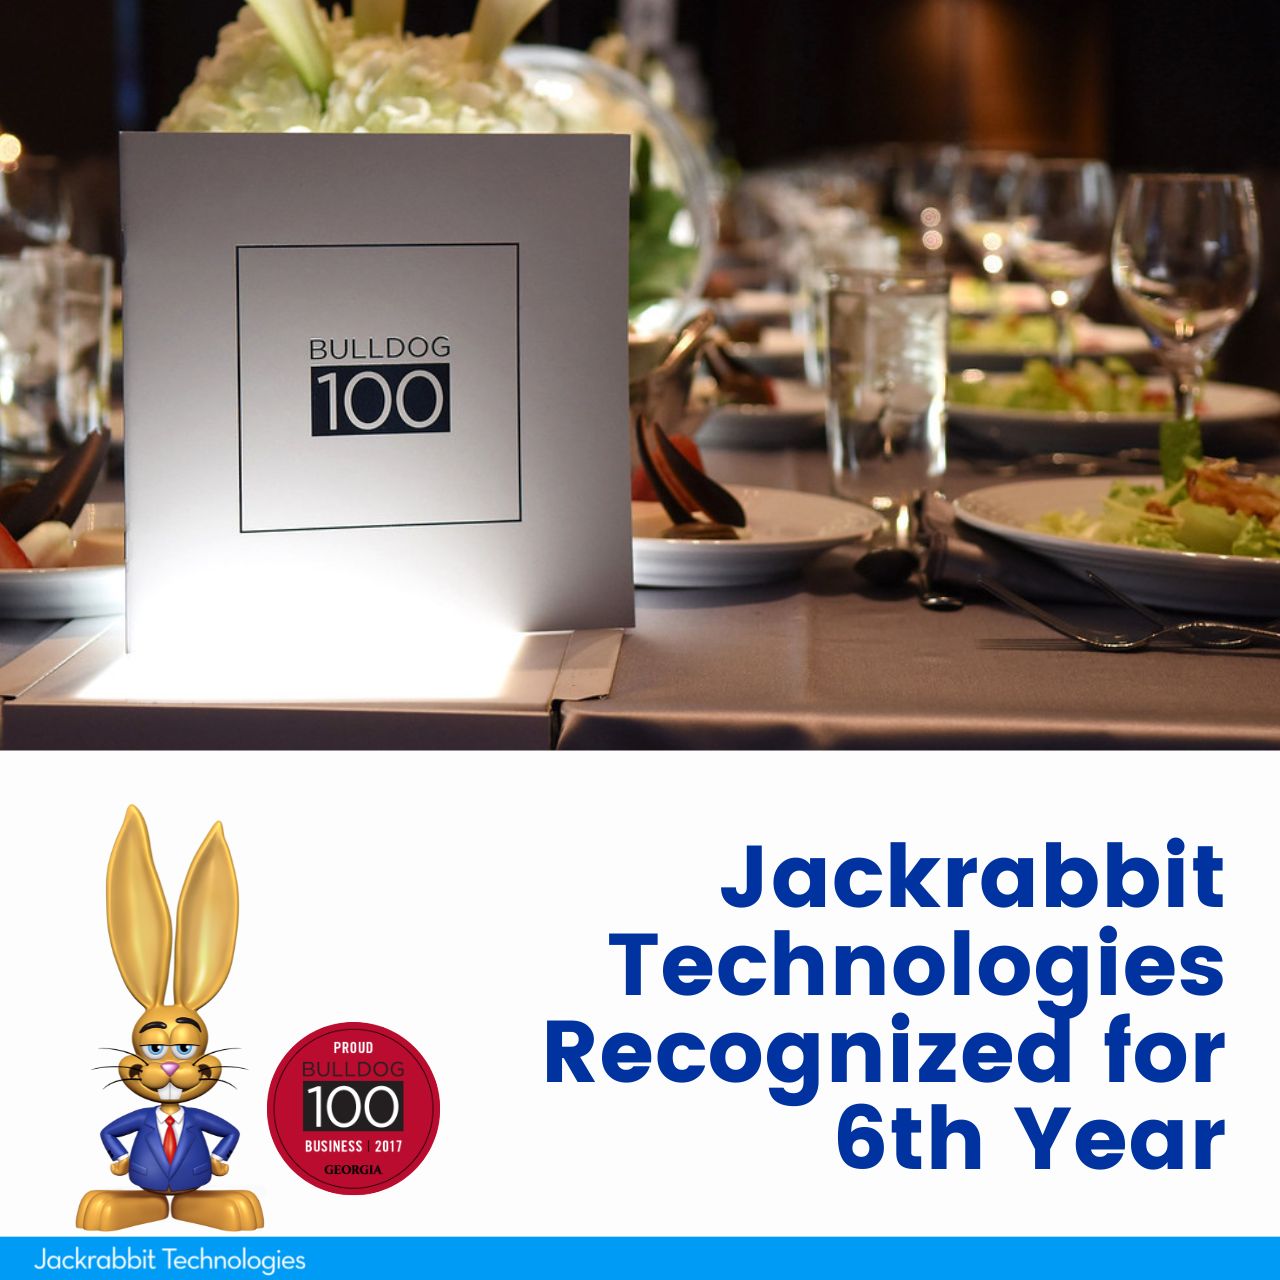 jackrabbit makes uga bulldog 100 for 6th year